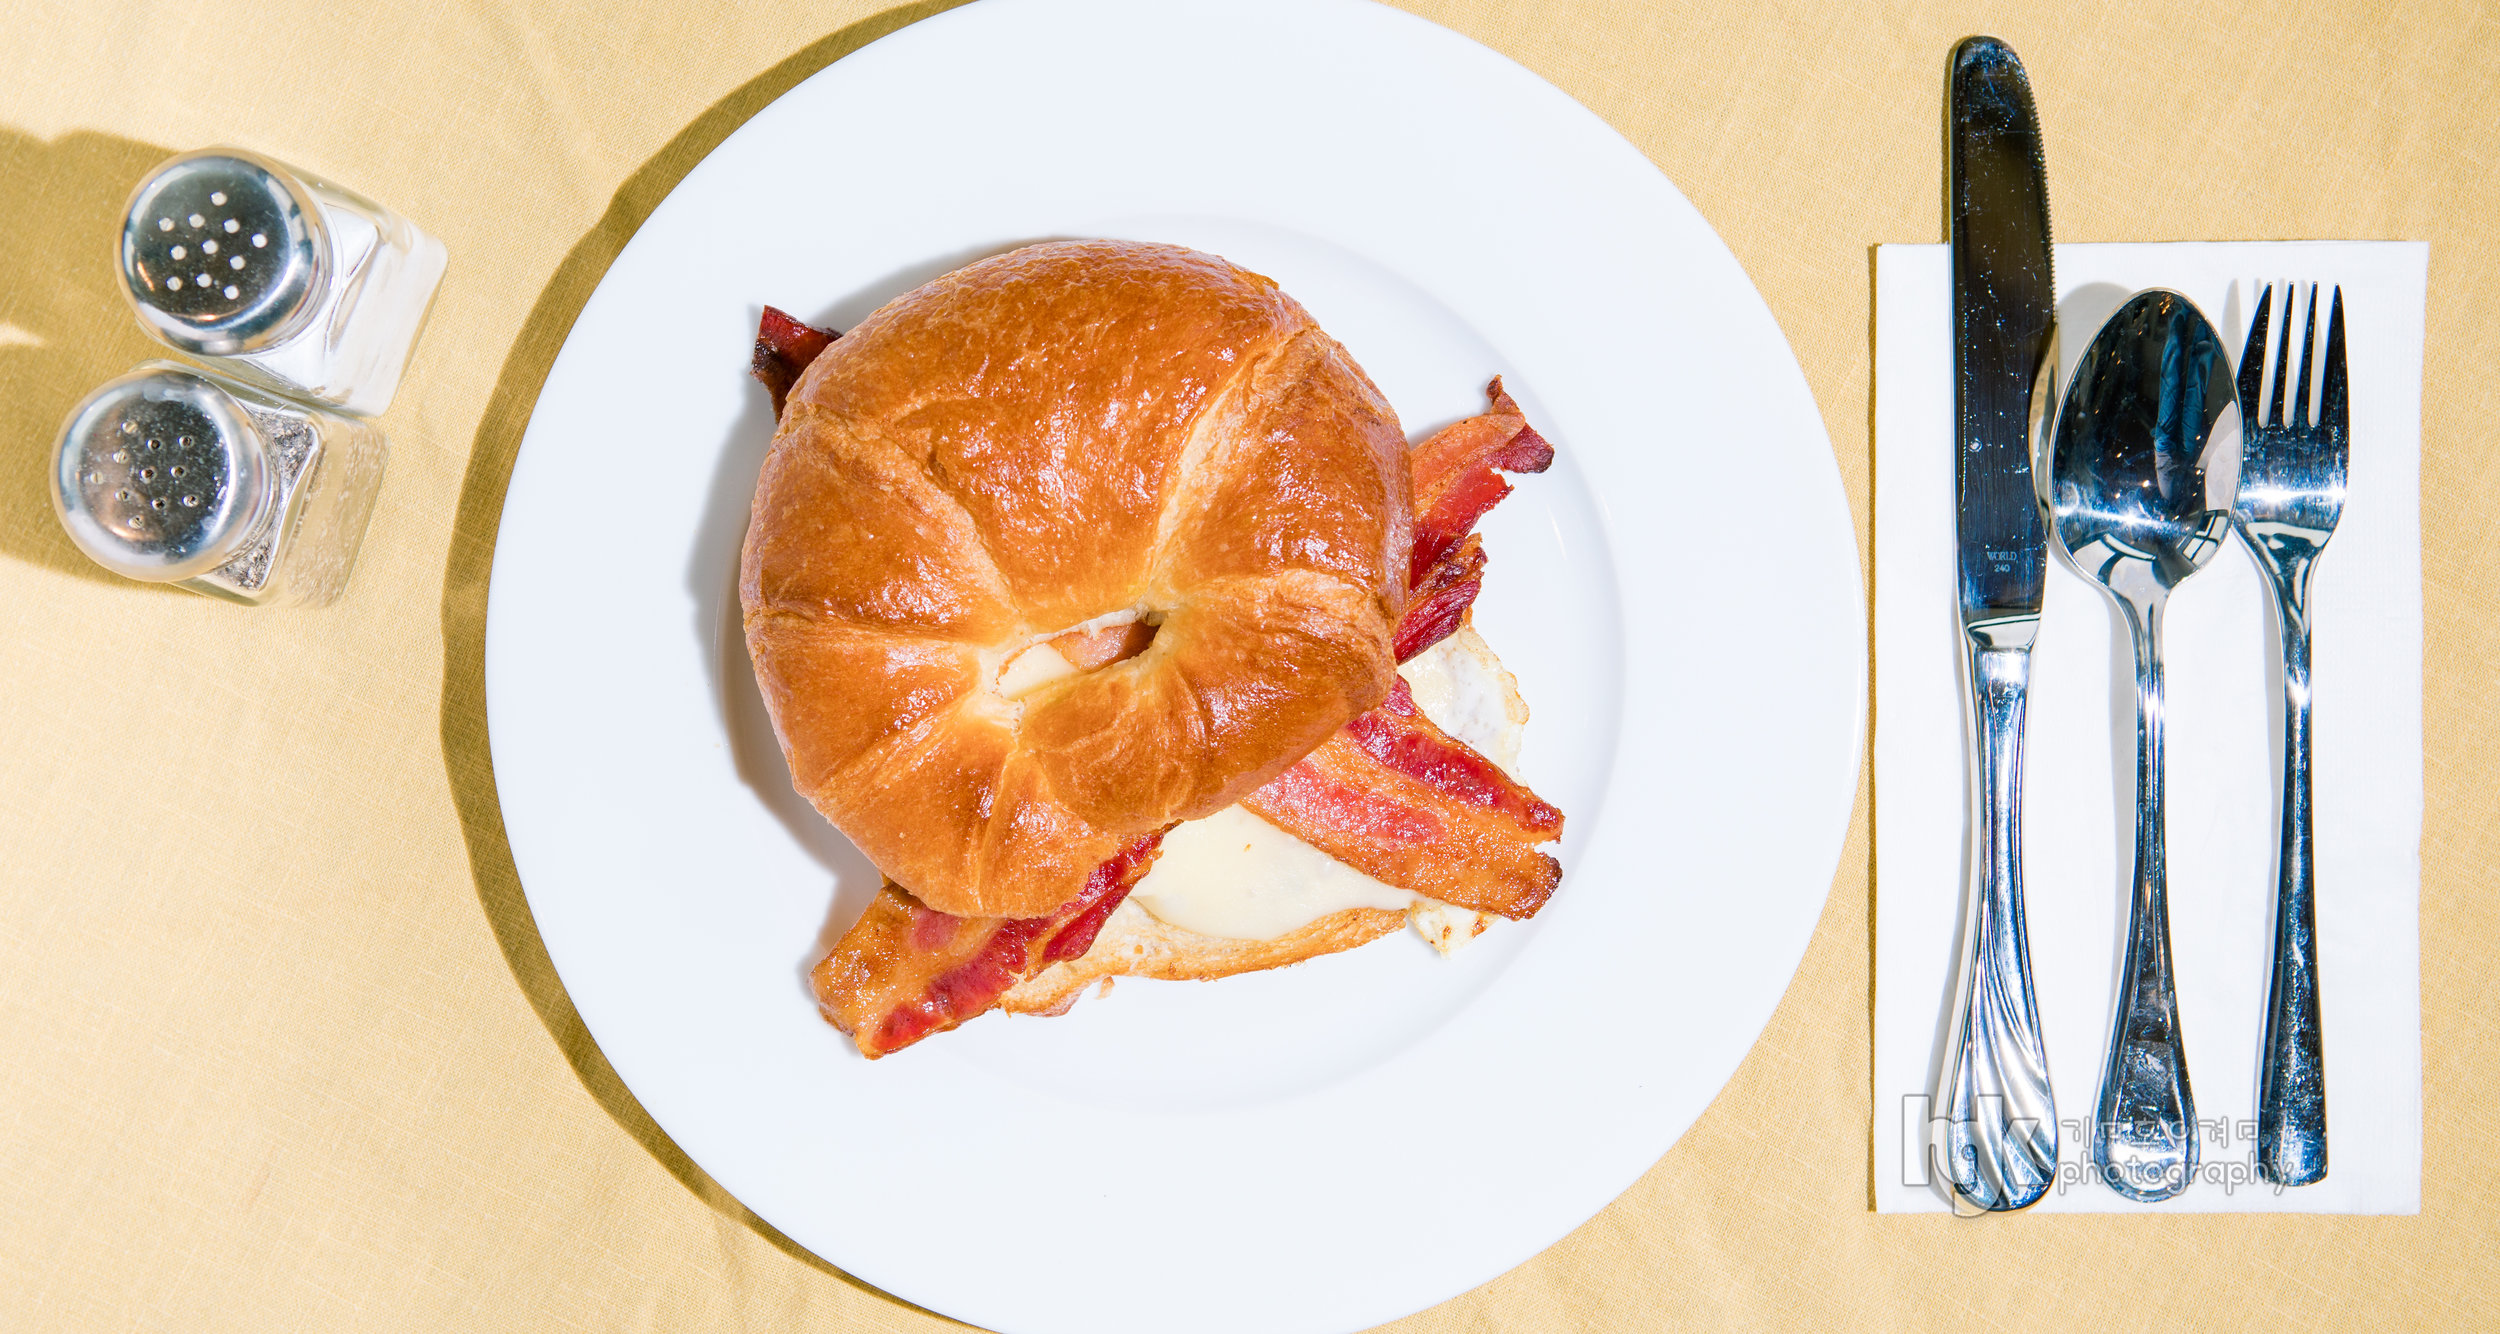 Bacon Croissant Breakfast Sandwich 1.jpg